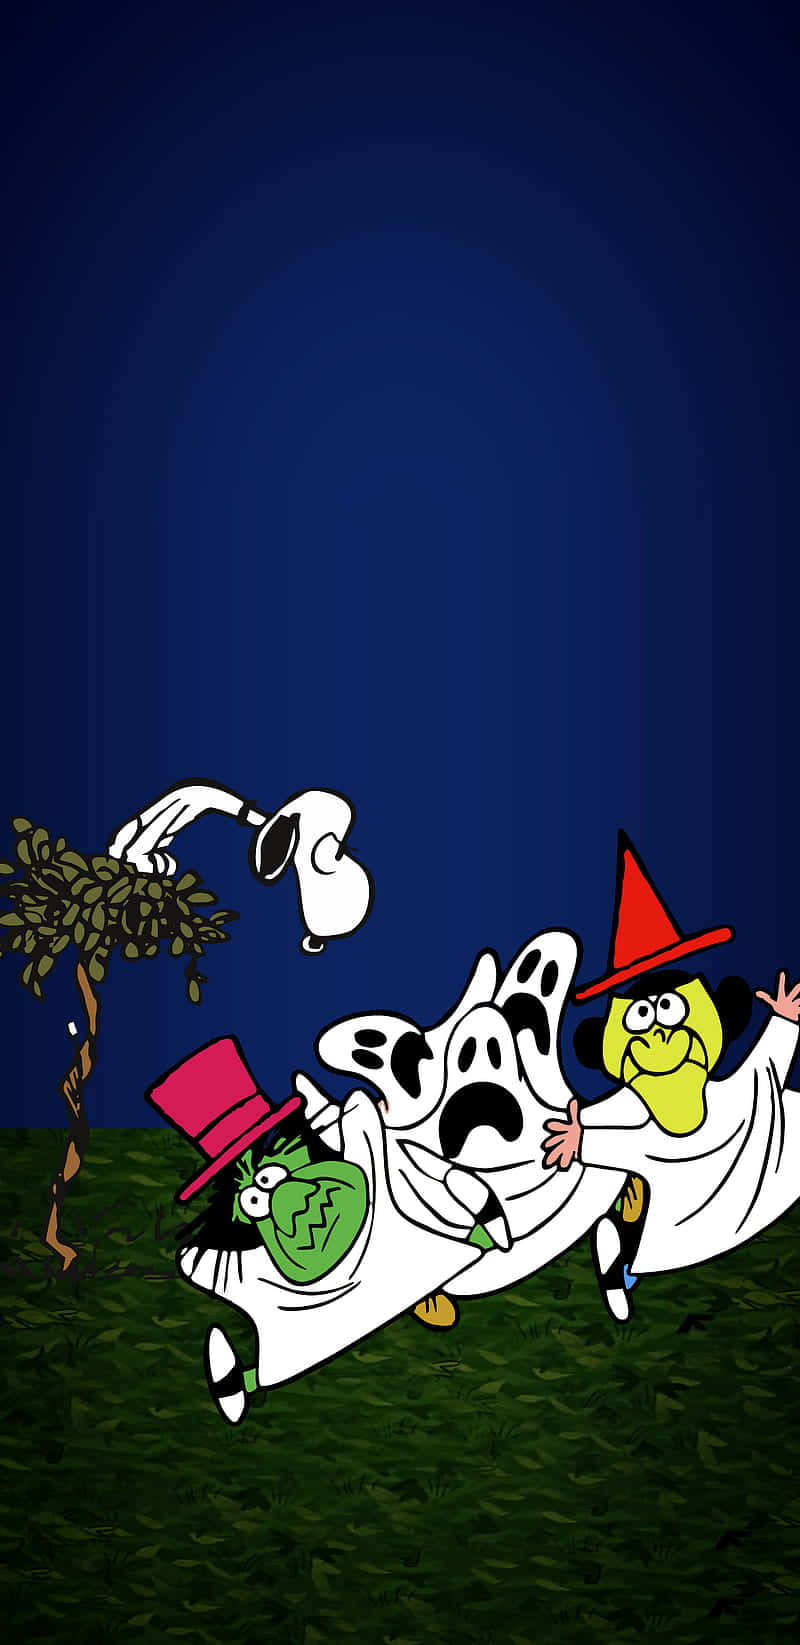 Charliebrown Und Die Peanuts-bande Kommen In Halloween-stimmung! Wallpaper